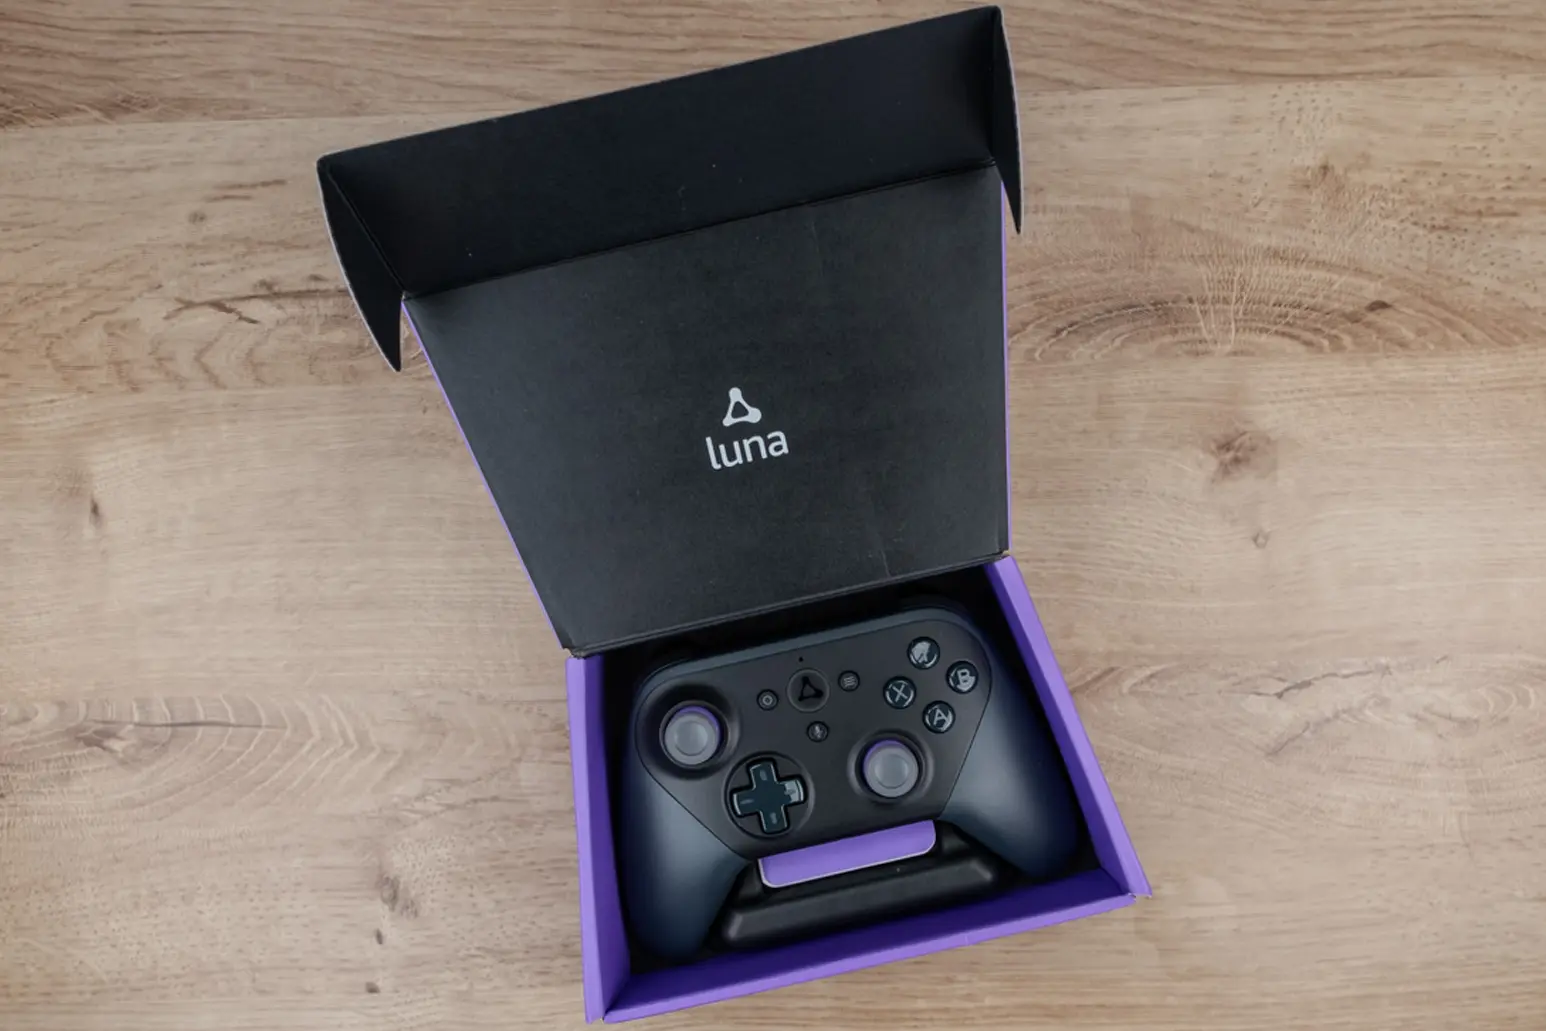 Fire TV Cube + mando Luna  Pack para juegos en streaming : :  Electrónica